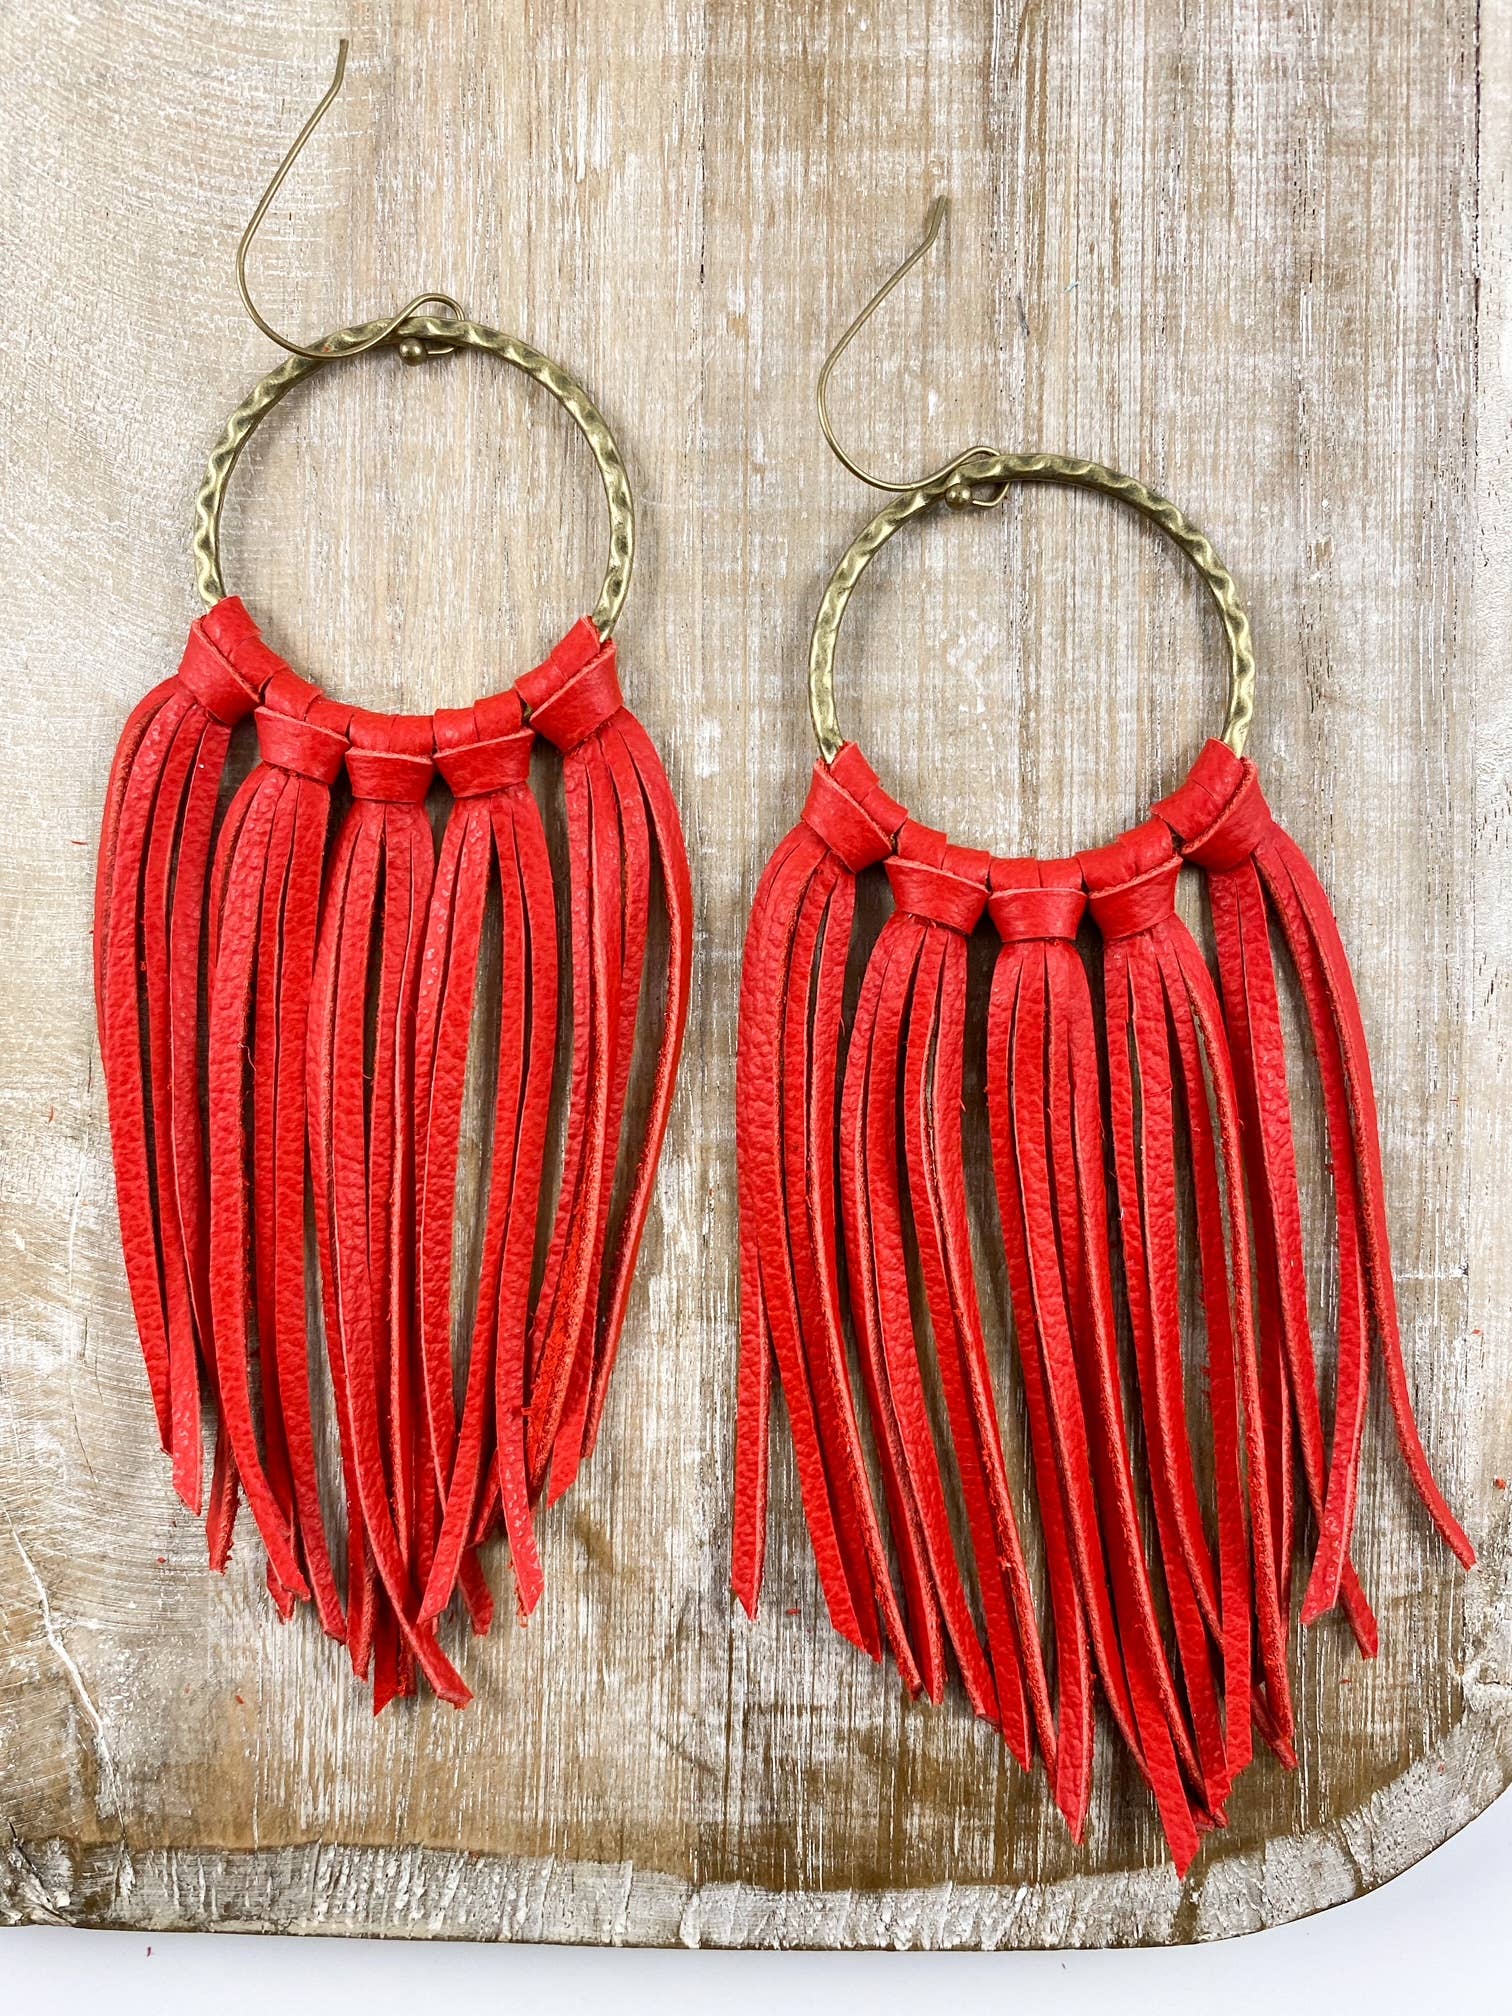 Red Hoop Fringe | Southwest large leather earrings Arkansas